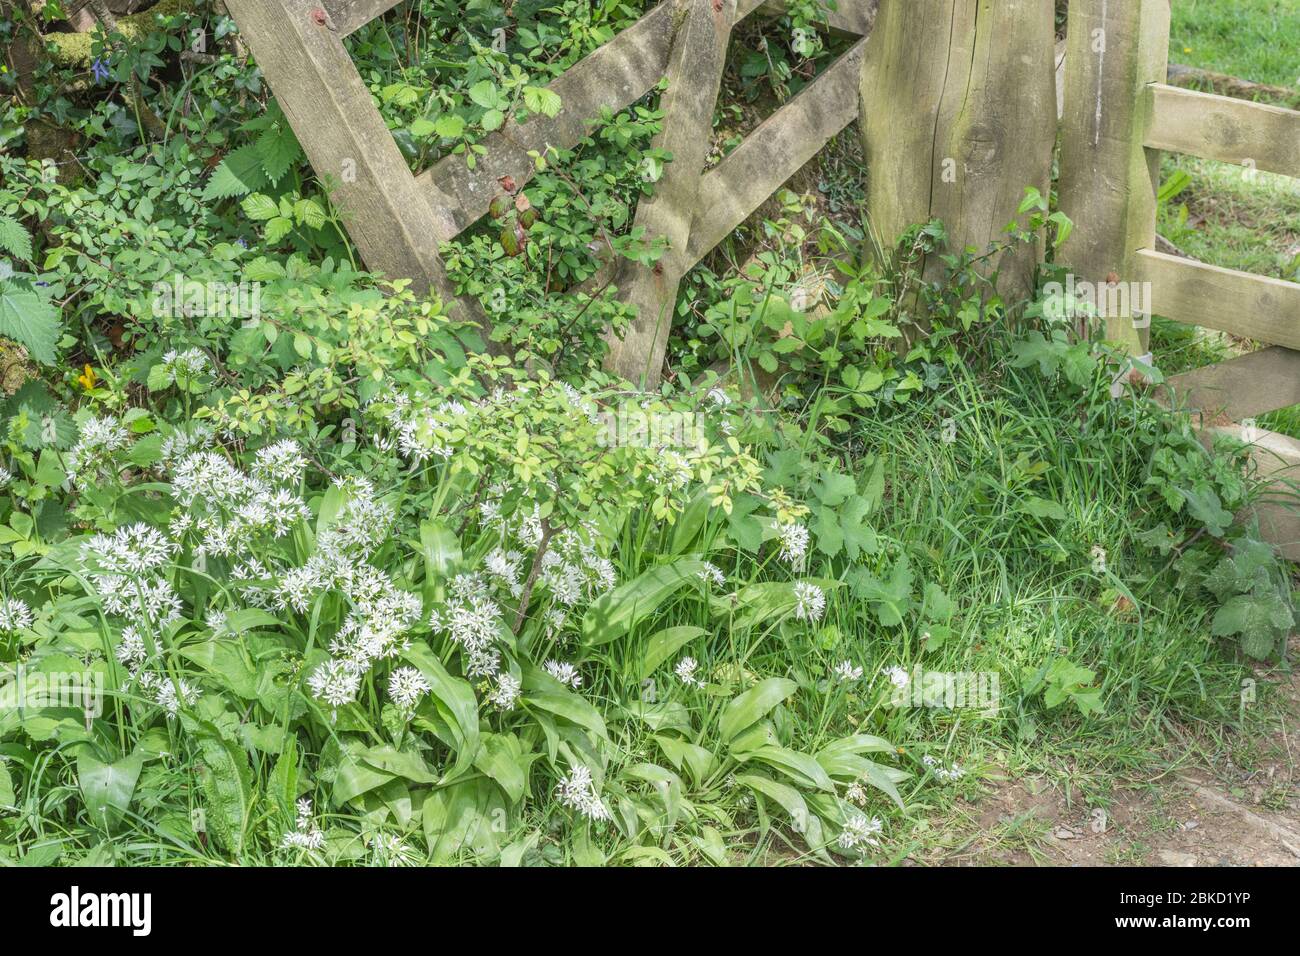 Foglie e fiori bianchi di Ramsons, aglio selvatico / Allium ursinum coltivazione da cancello di fattoria in legno - una foragged commestibile & ex pianta selvatica medicinale. Foto Stock